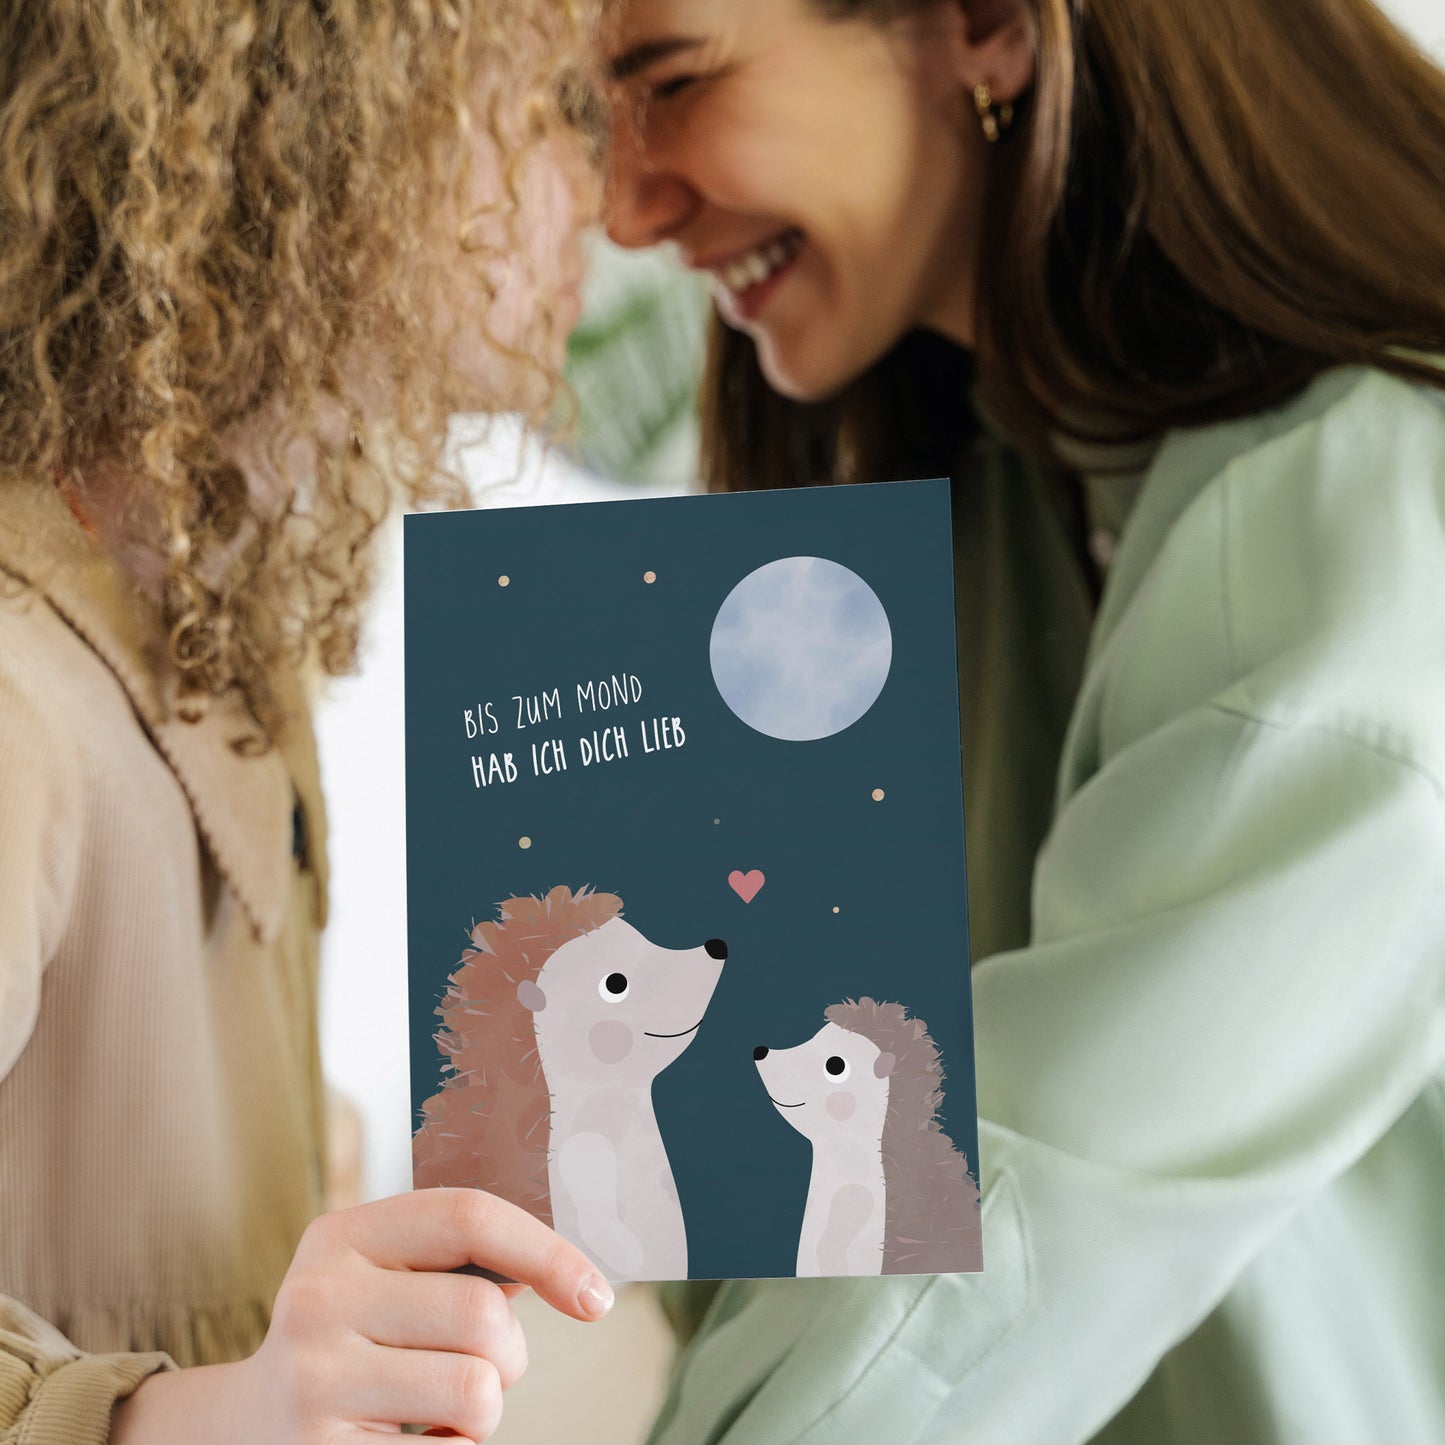 Karte - Igel "Bis zum Mond hab ich dich Lieb"